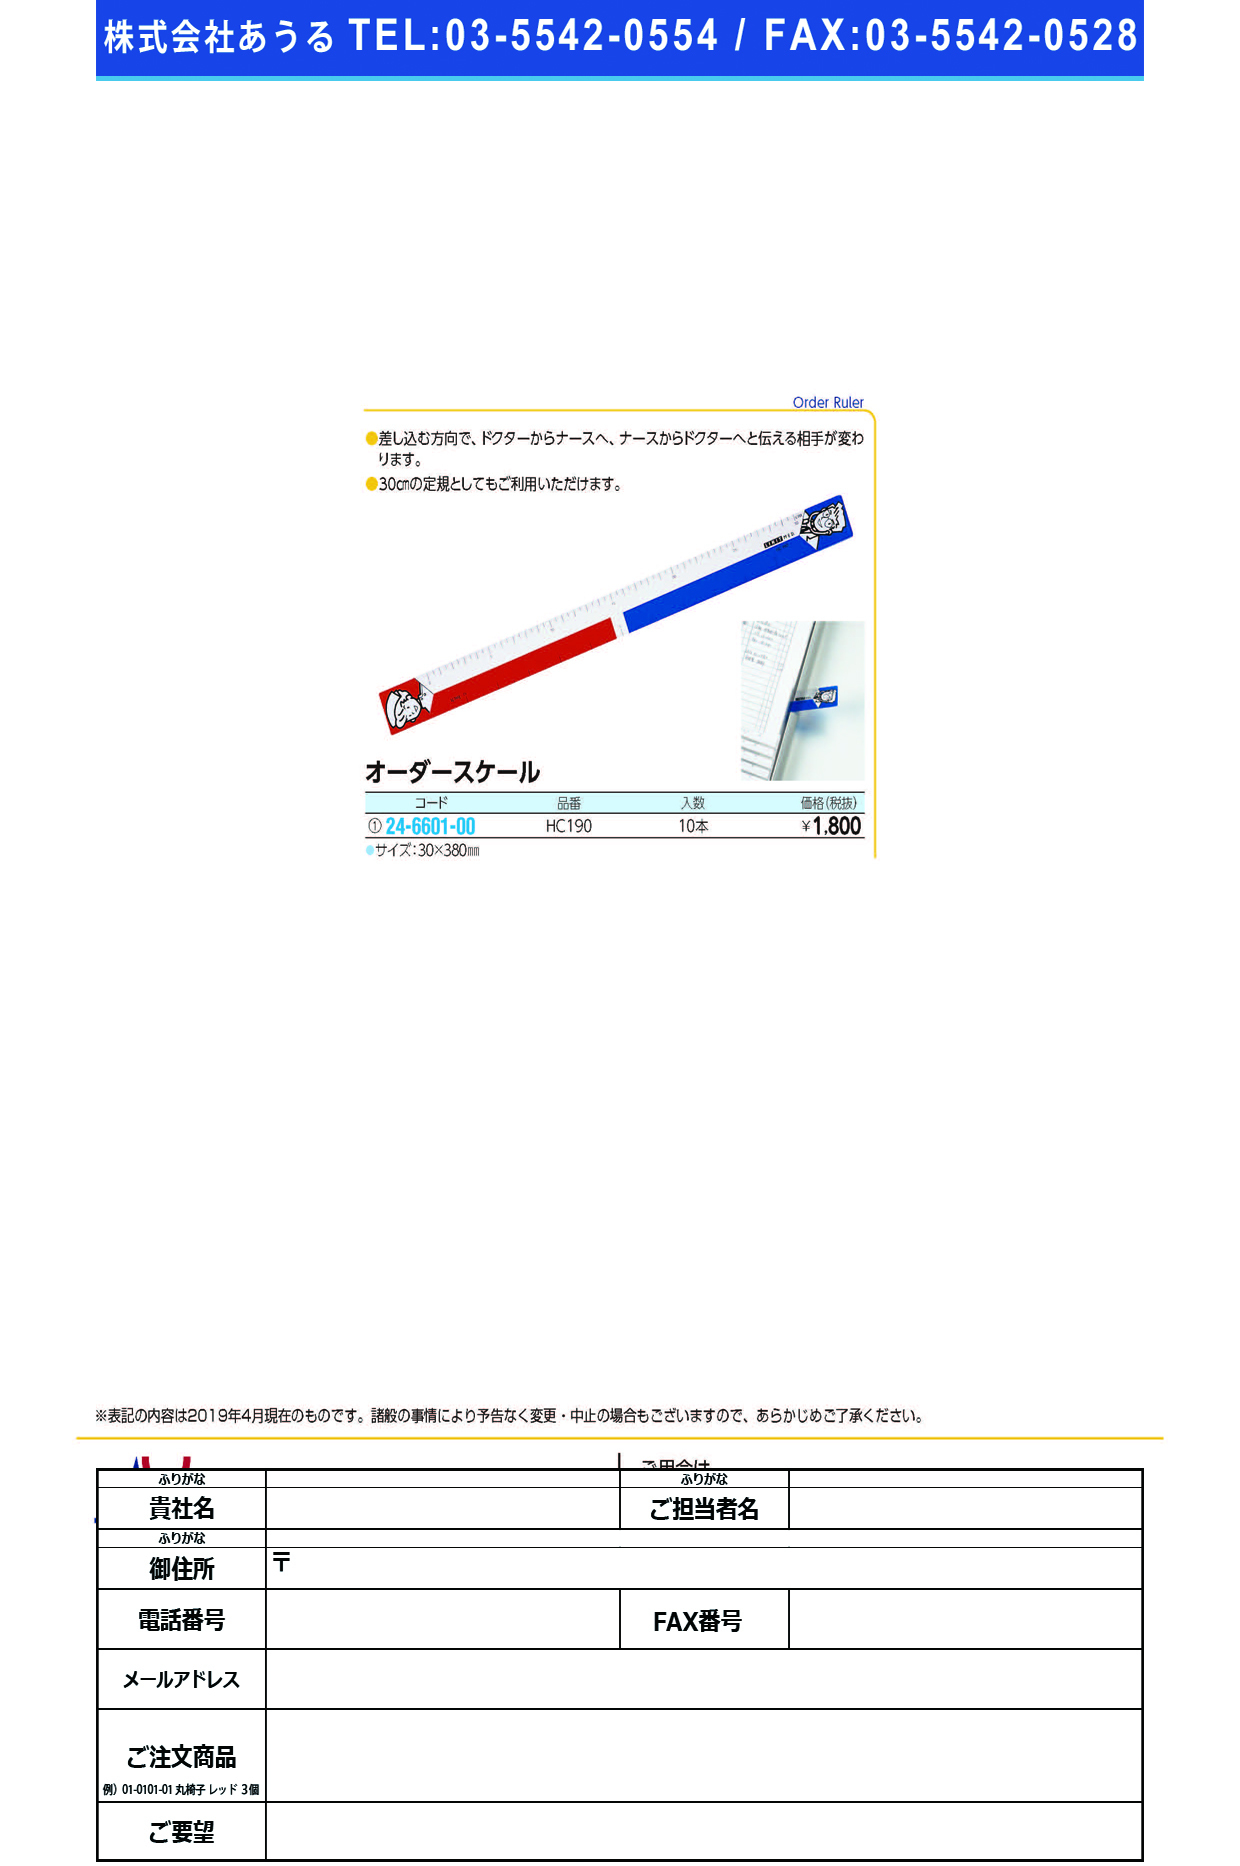 (24-6601-00)オーダースケール HC190(10ｲﾘ) ｵｰﾀﾞｰｽｹｰﾙ(ＬＩＨＩＴＬＡＢ．)【1袋単位】【2019年カタログ商品】